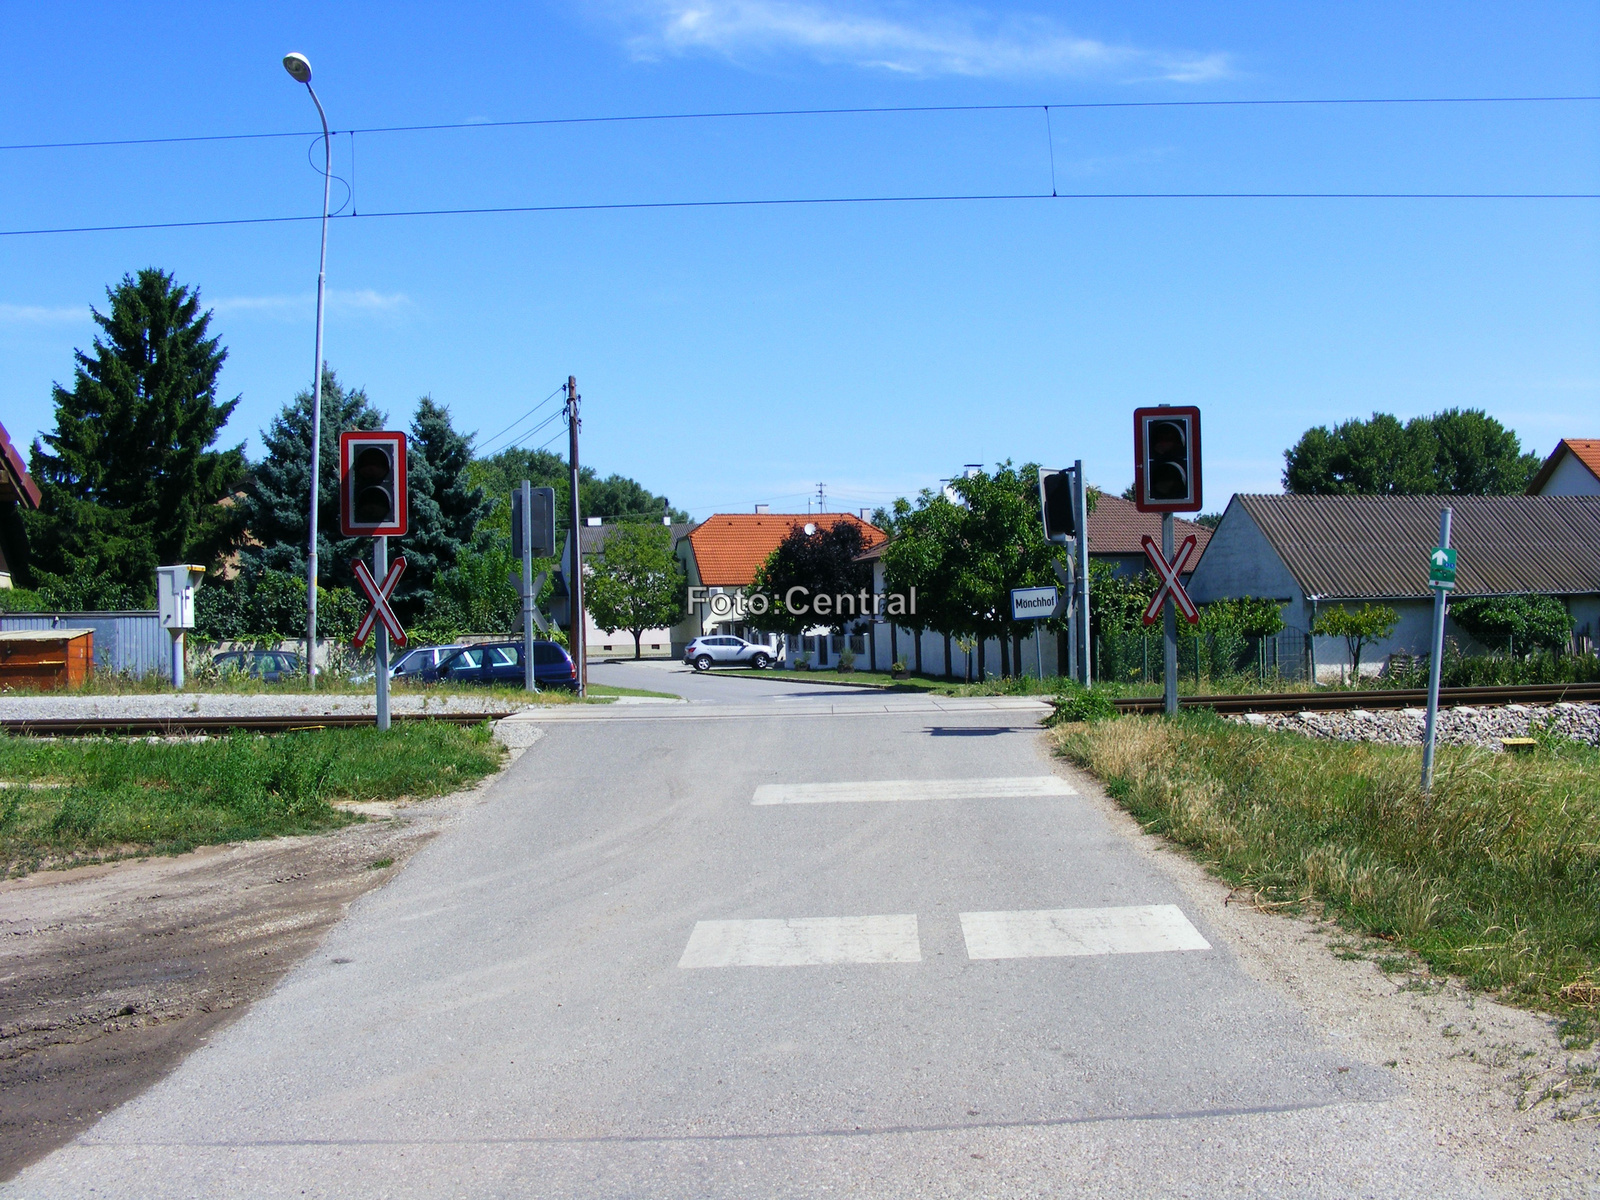 A megállóhelynél lévő vasúti átjáró Barátudvar centruma felé néz